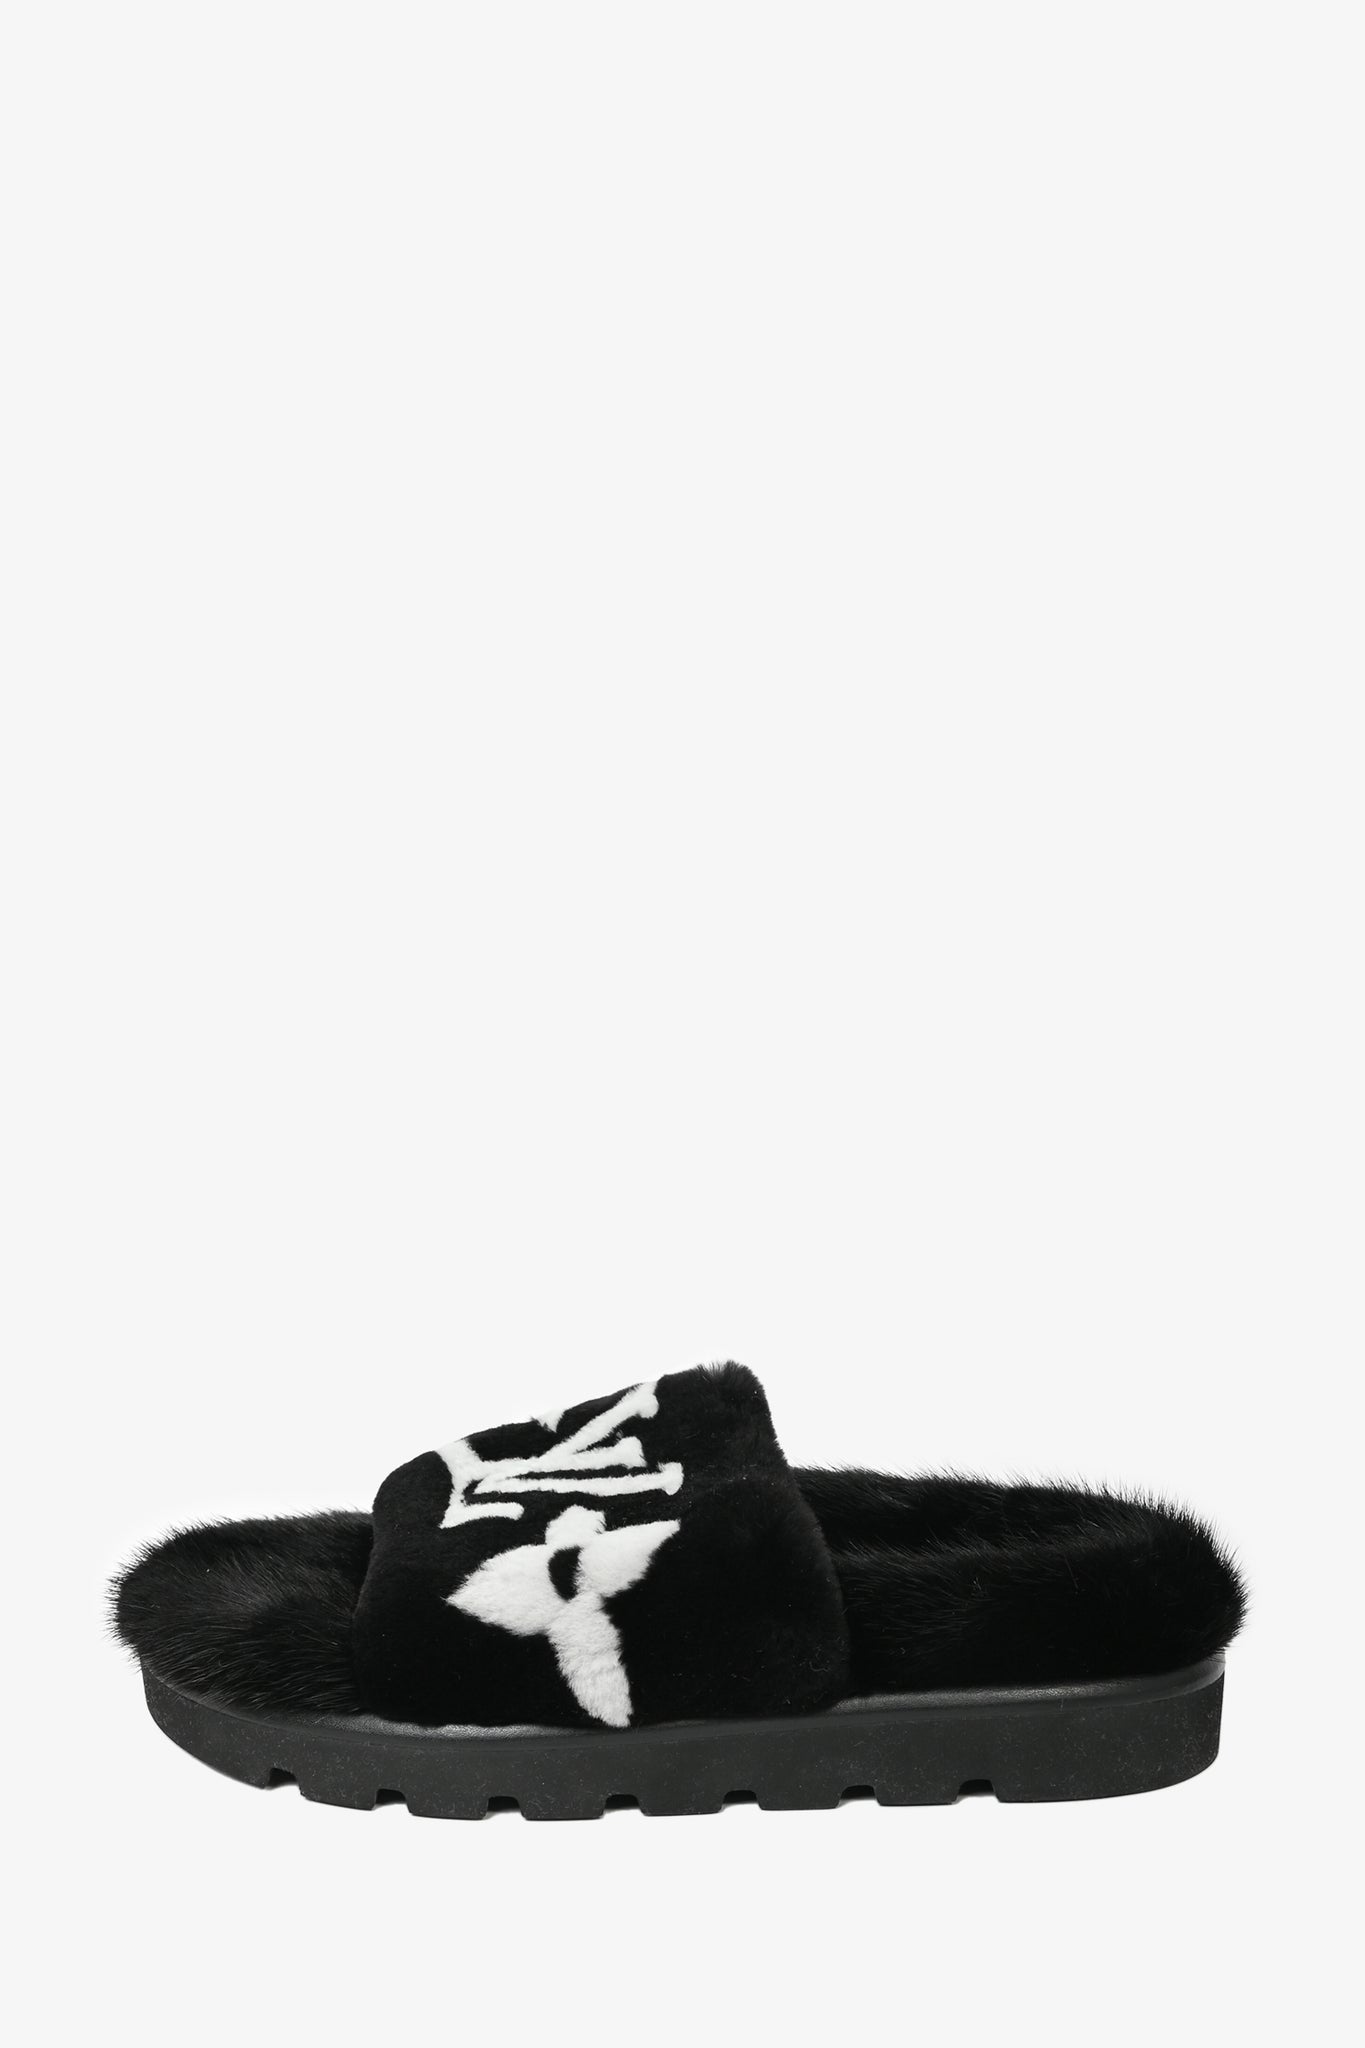 Louis Vuitton Black/White Shearing Fur Slide Flats Size 38 Louis